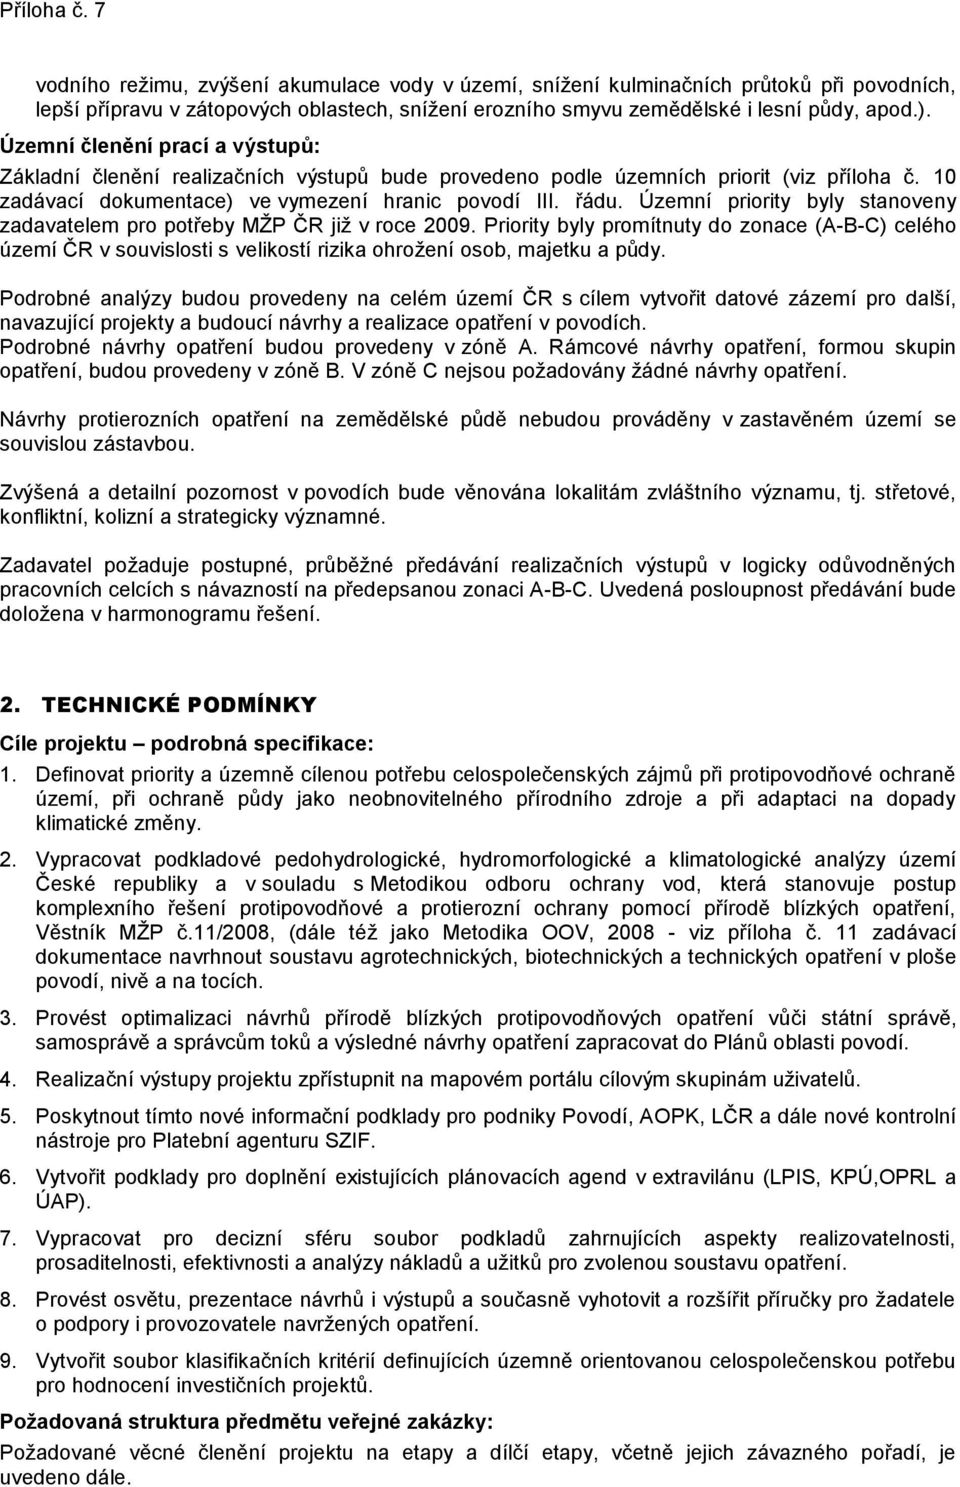 Územní priority byly stanoveny zadavatelem pro potřeby MŽP ČR již v roce 2009.